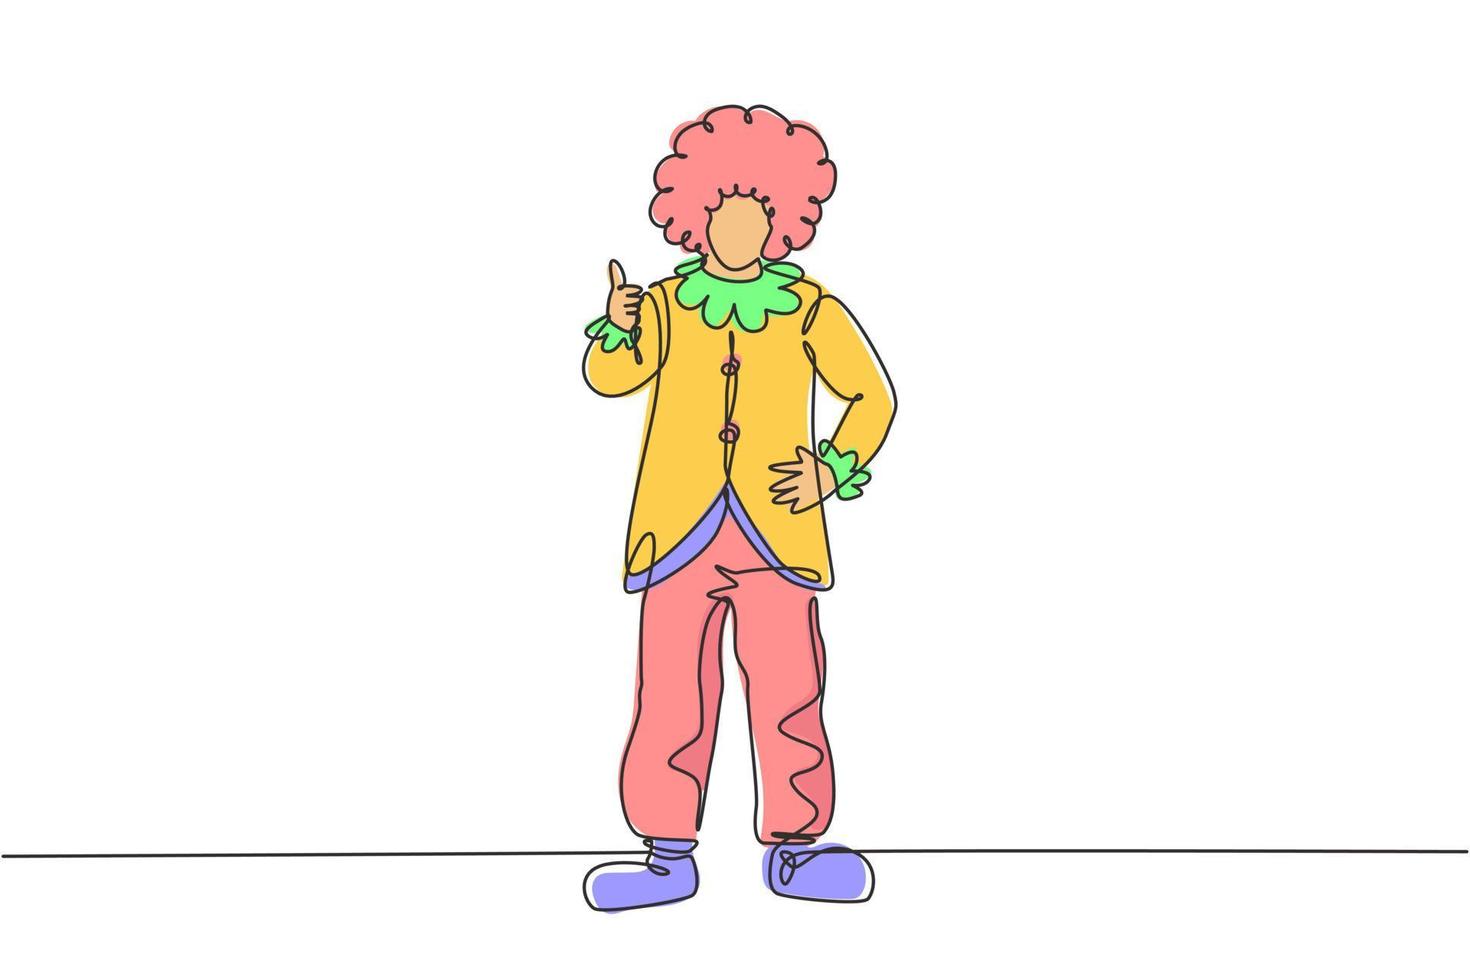 il clown disegna una linea continua con un gesto di pollice alzato indossando parrucca e costume da clown pronto a intrattenere il pubblico nell'arena del circo. illustrazione grafica vettoriale di disegno di disegno a linea singola